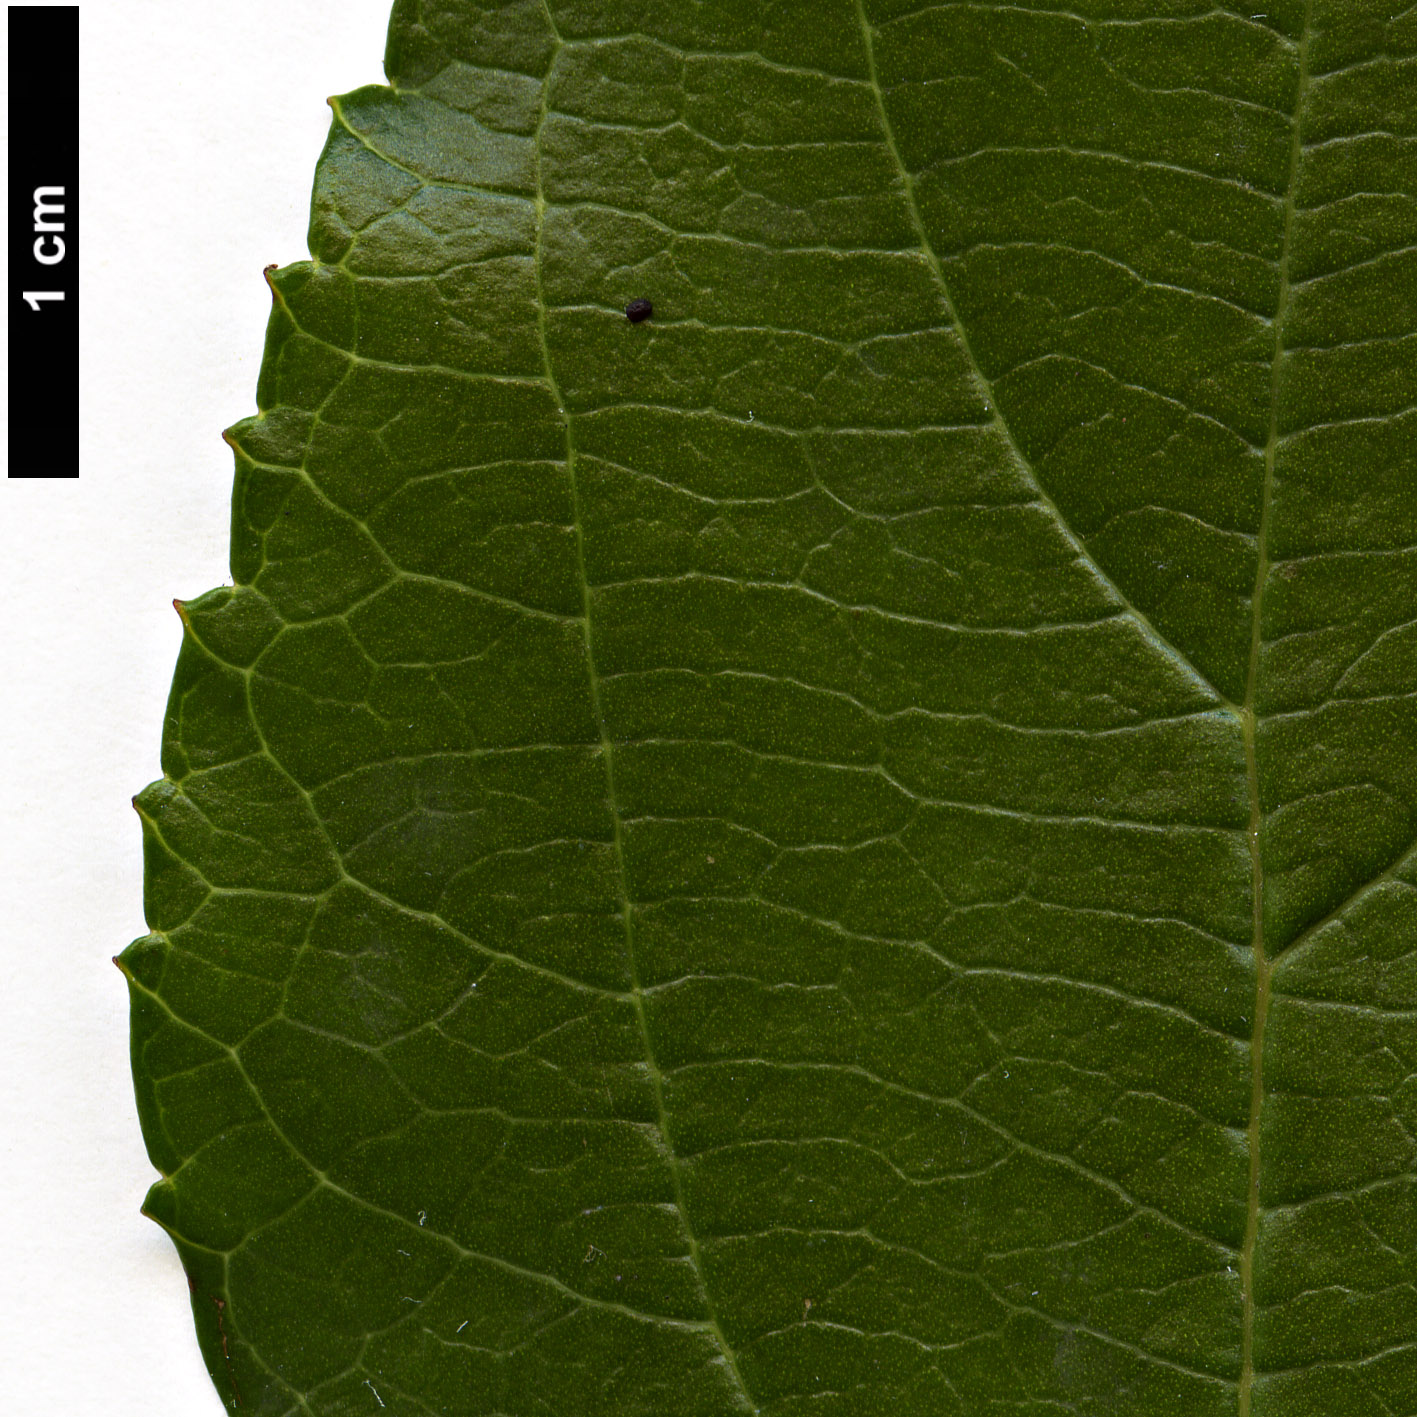 High resolution image: Family: Adoxaceae - Genus: Viburnum - Taxon: taitoense